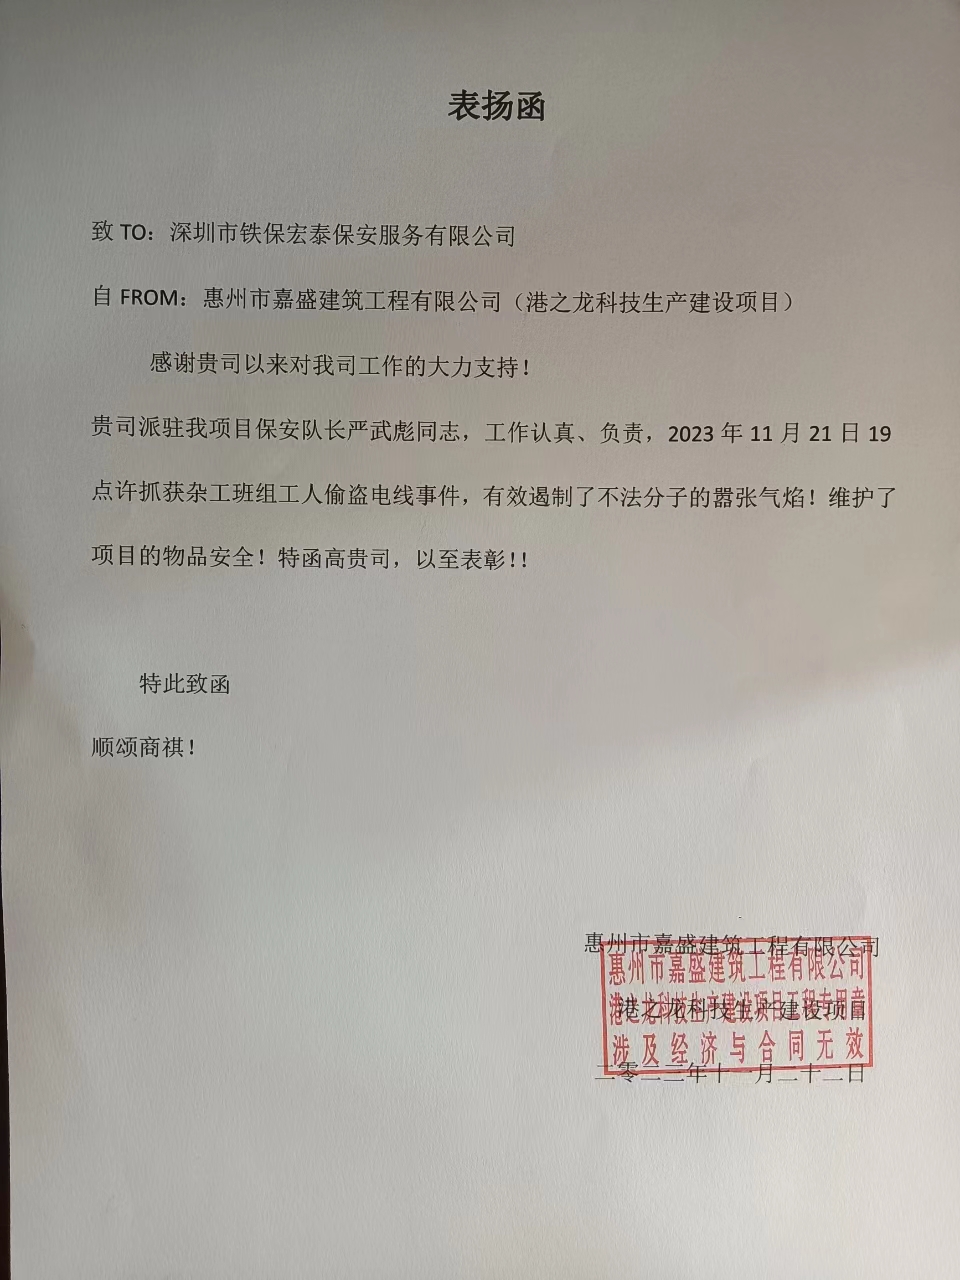 惠州嘉盛建筑工程公司目致信表扬我司保安队長(cháng)